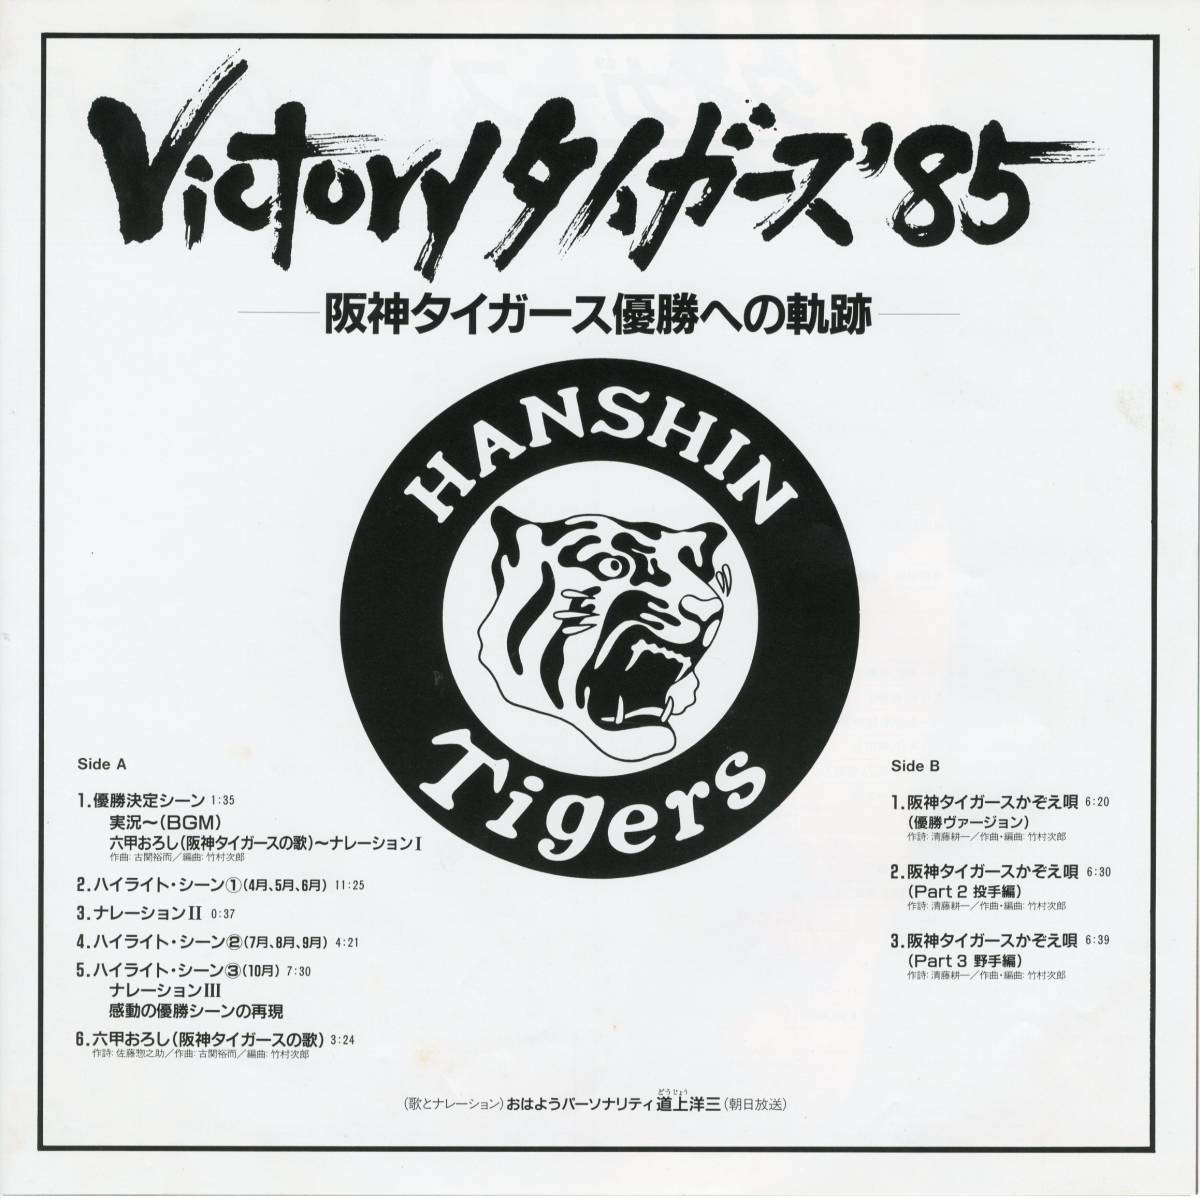 LP 美盤 カラー・ピンナップ&'85戦績表付き / VICTORYタイガース'85【J-159】_画像3